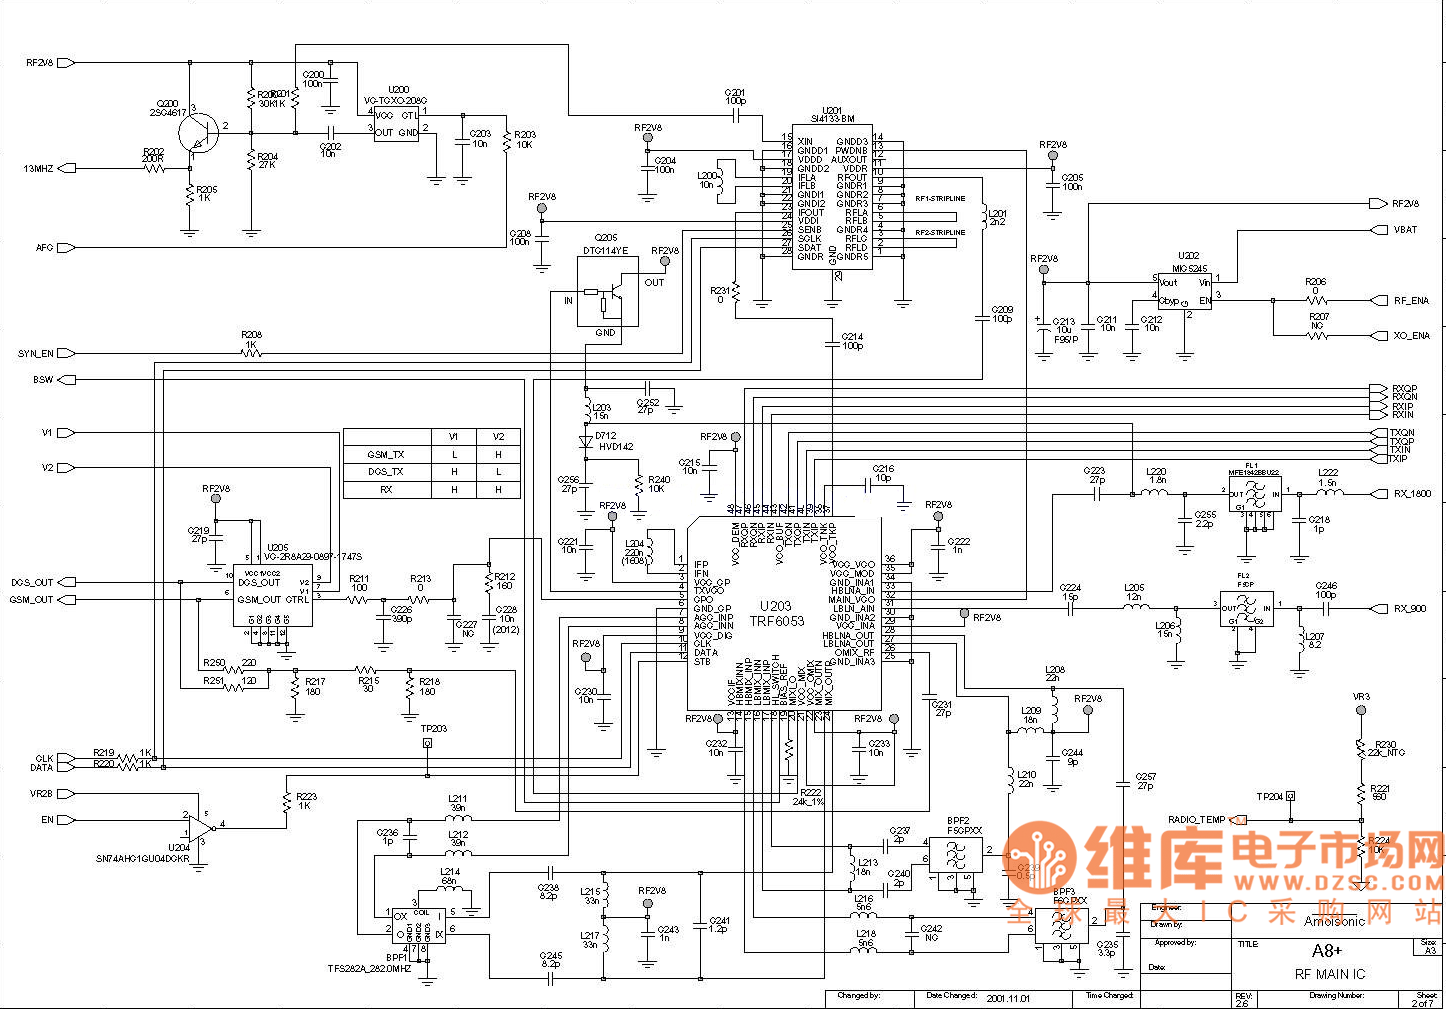 夏新A8中频电路原理图 